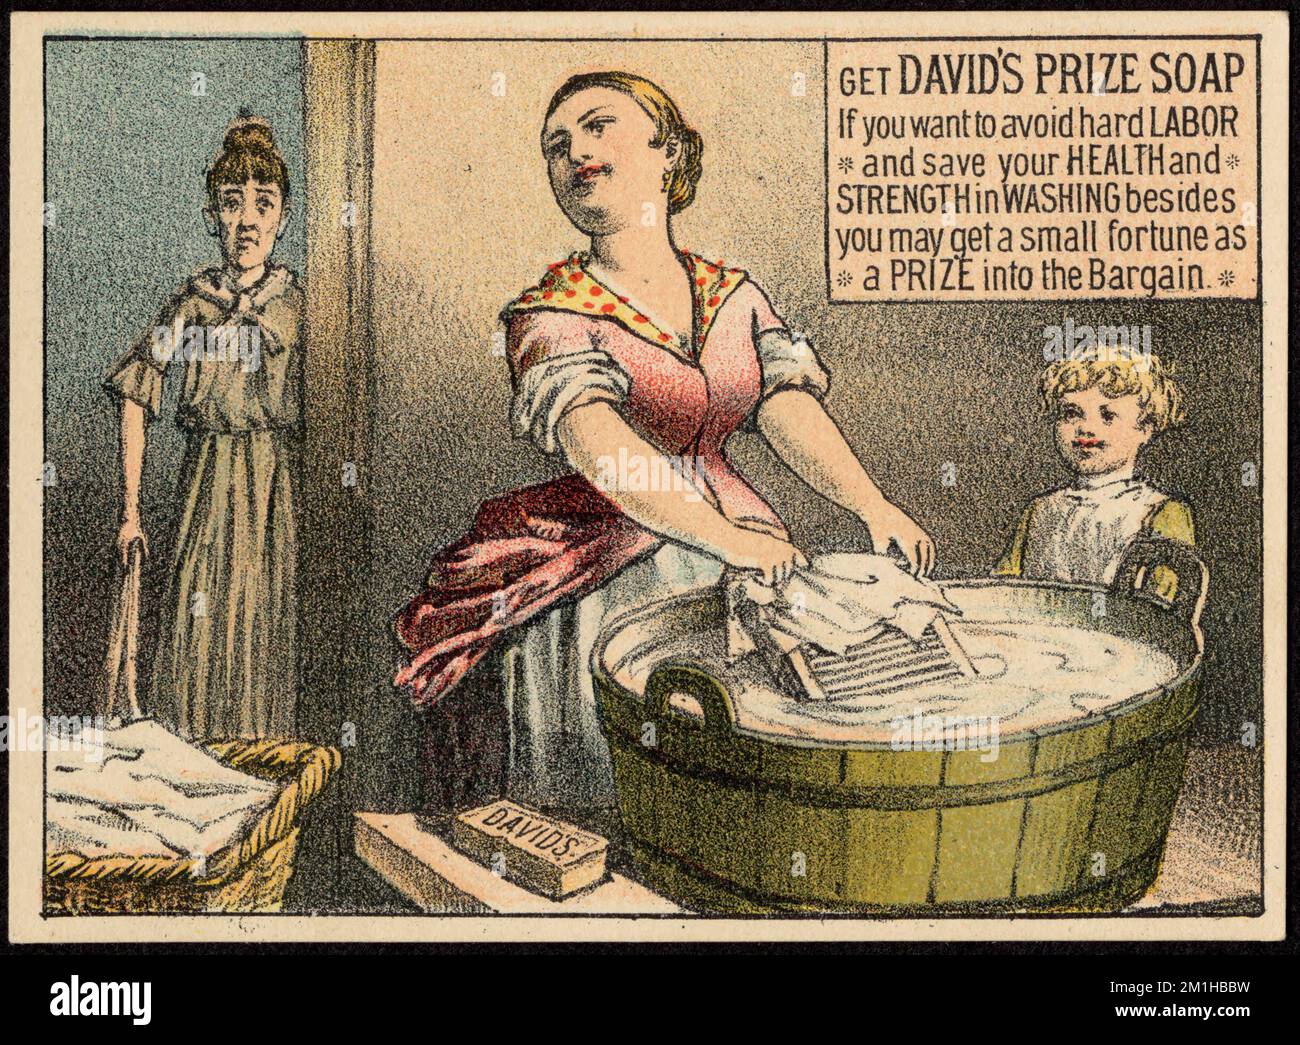 Hol dir Davids Preis Seife, wenn du harte Arbeit vermeiden und deine Gesundheit und Kraft beim Waschen sparen willst, außerdem kannst du ein kleines Vermögen einen Preis in das Geschäft bekommen, Frauen, Kinder, Waschbecken, Waschbretter, Haushaltsseife, amerikanische Handelskarten des 19.. Jahrhunderts Stockfoto